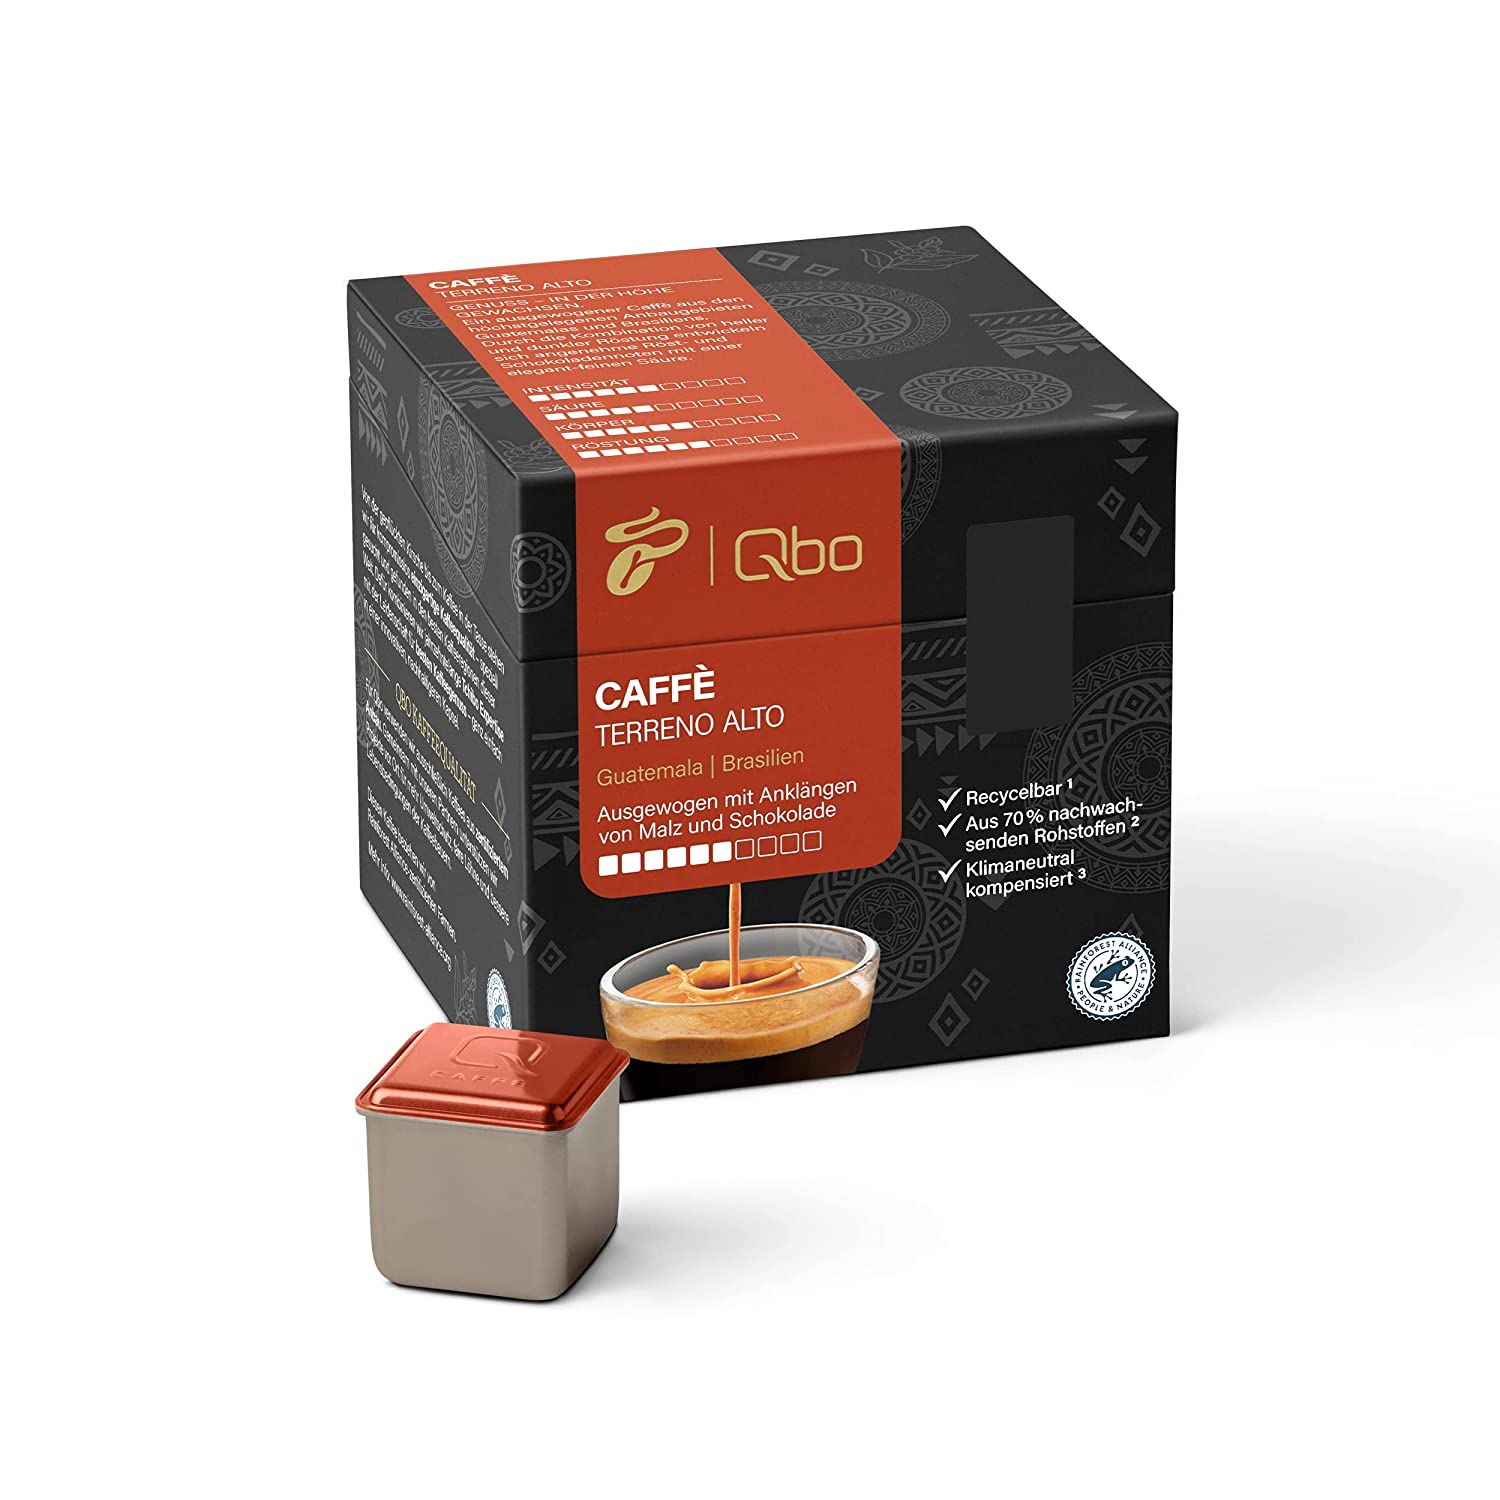 Tchibo Qbo Caffè Terreno Alto Premium Kaffeekapseln, 27 Stück (Caffè, Intensität 6/10, ausgewogen und malzig), nachhaltig, aus 70% nachwachsenden Rohstoffen & klimaneutral kompensiert